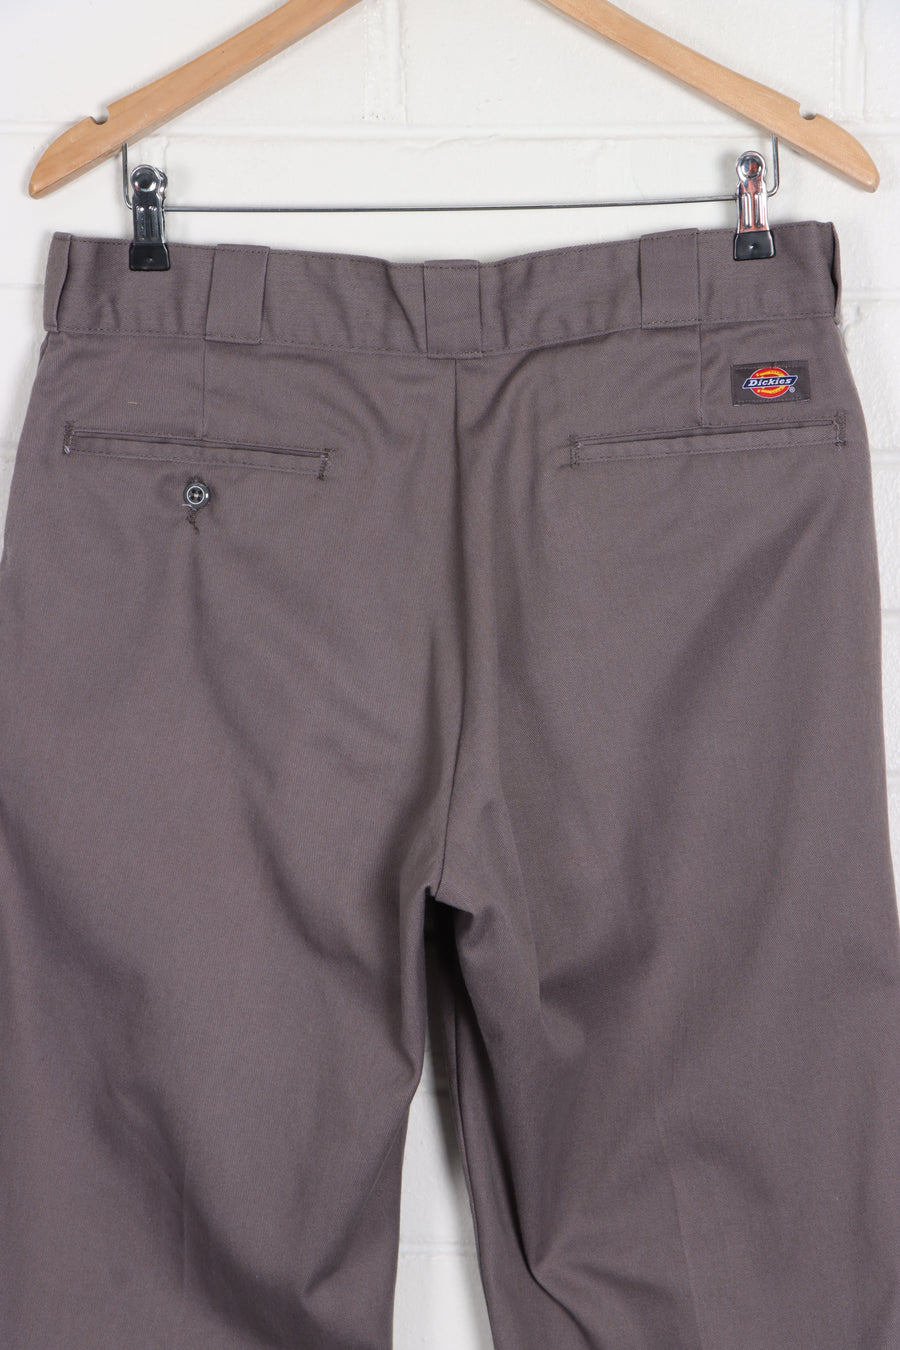 DICKIES Grey Lavender 874 Original Fit Workwear Pants (34x30) - Vintage Sole Melbourne